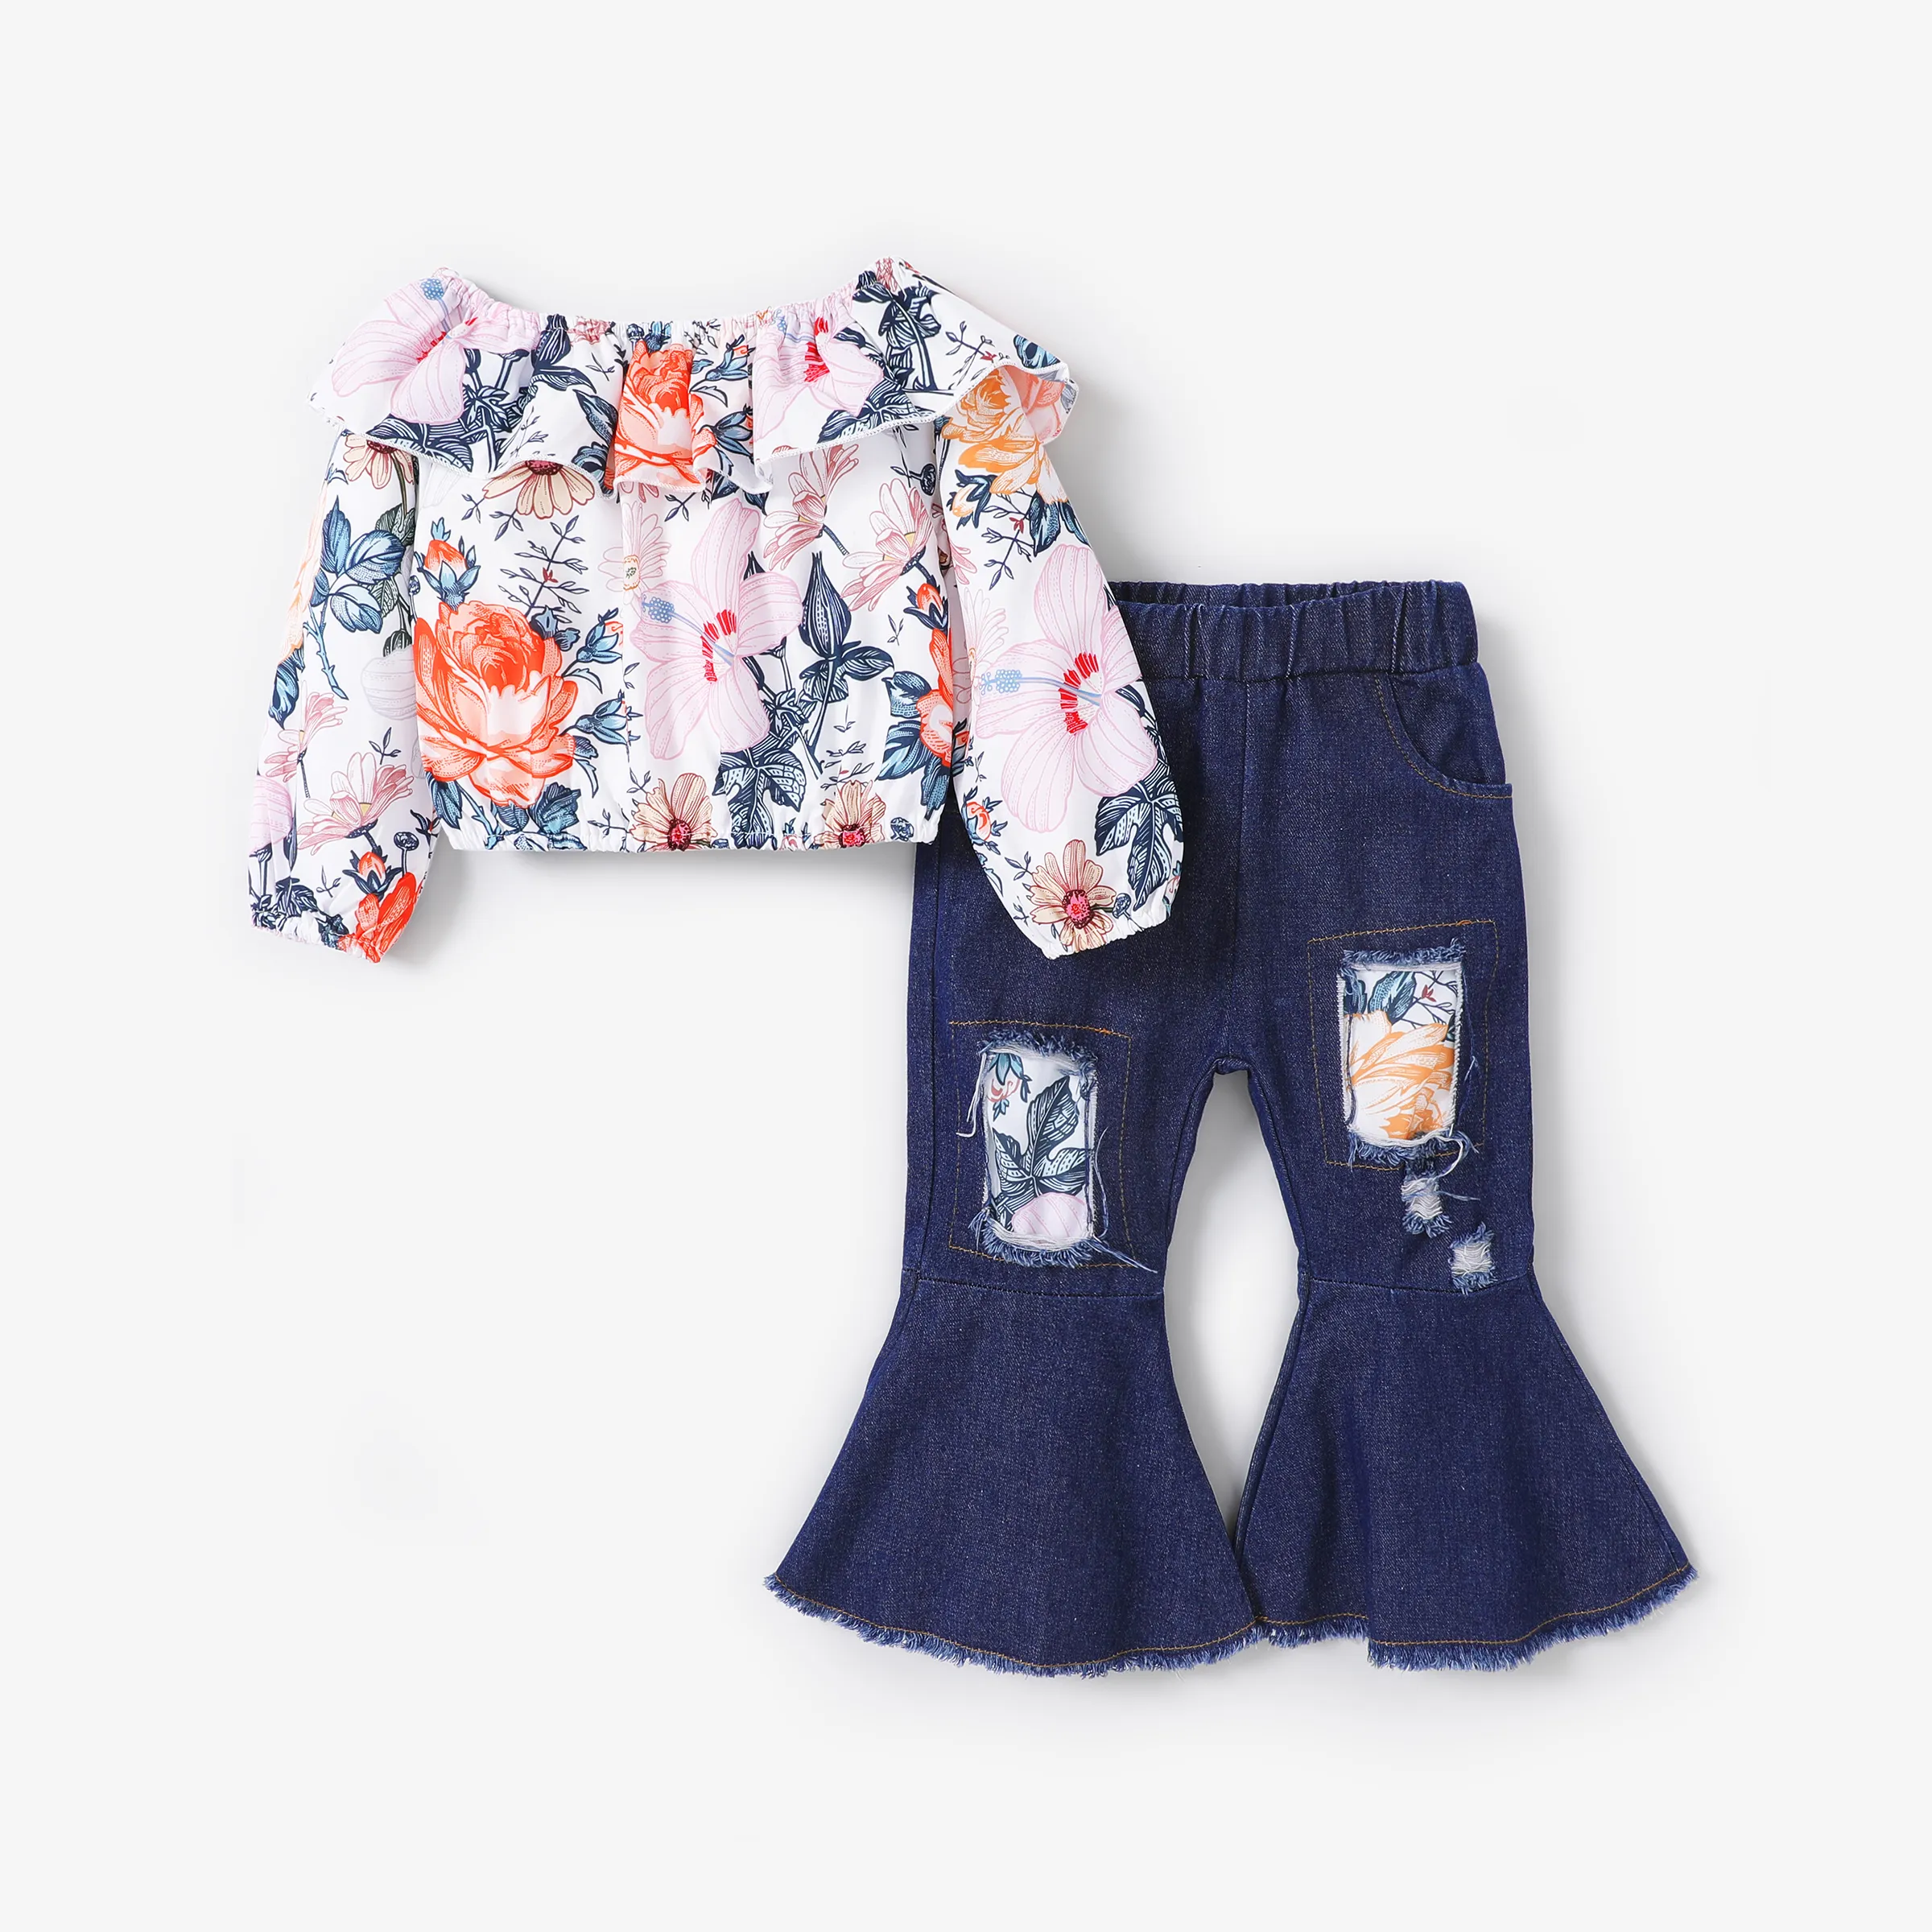 2pcs Toddler Girl Big Floral Pattern Off-Shoulder Top and Jeans Set